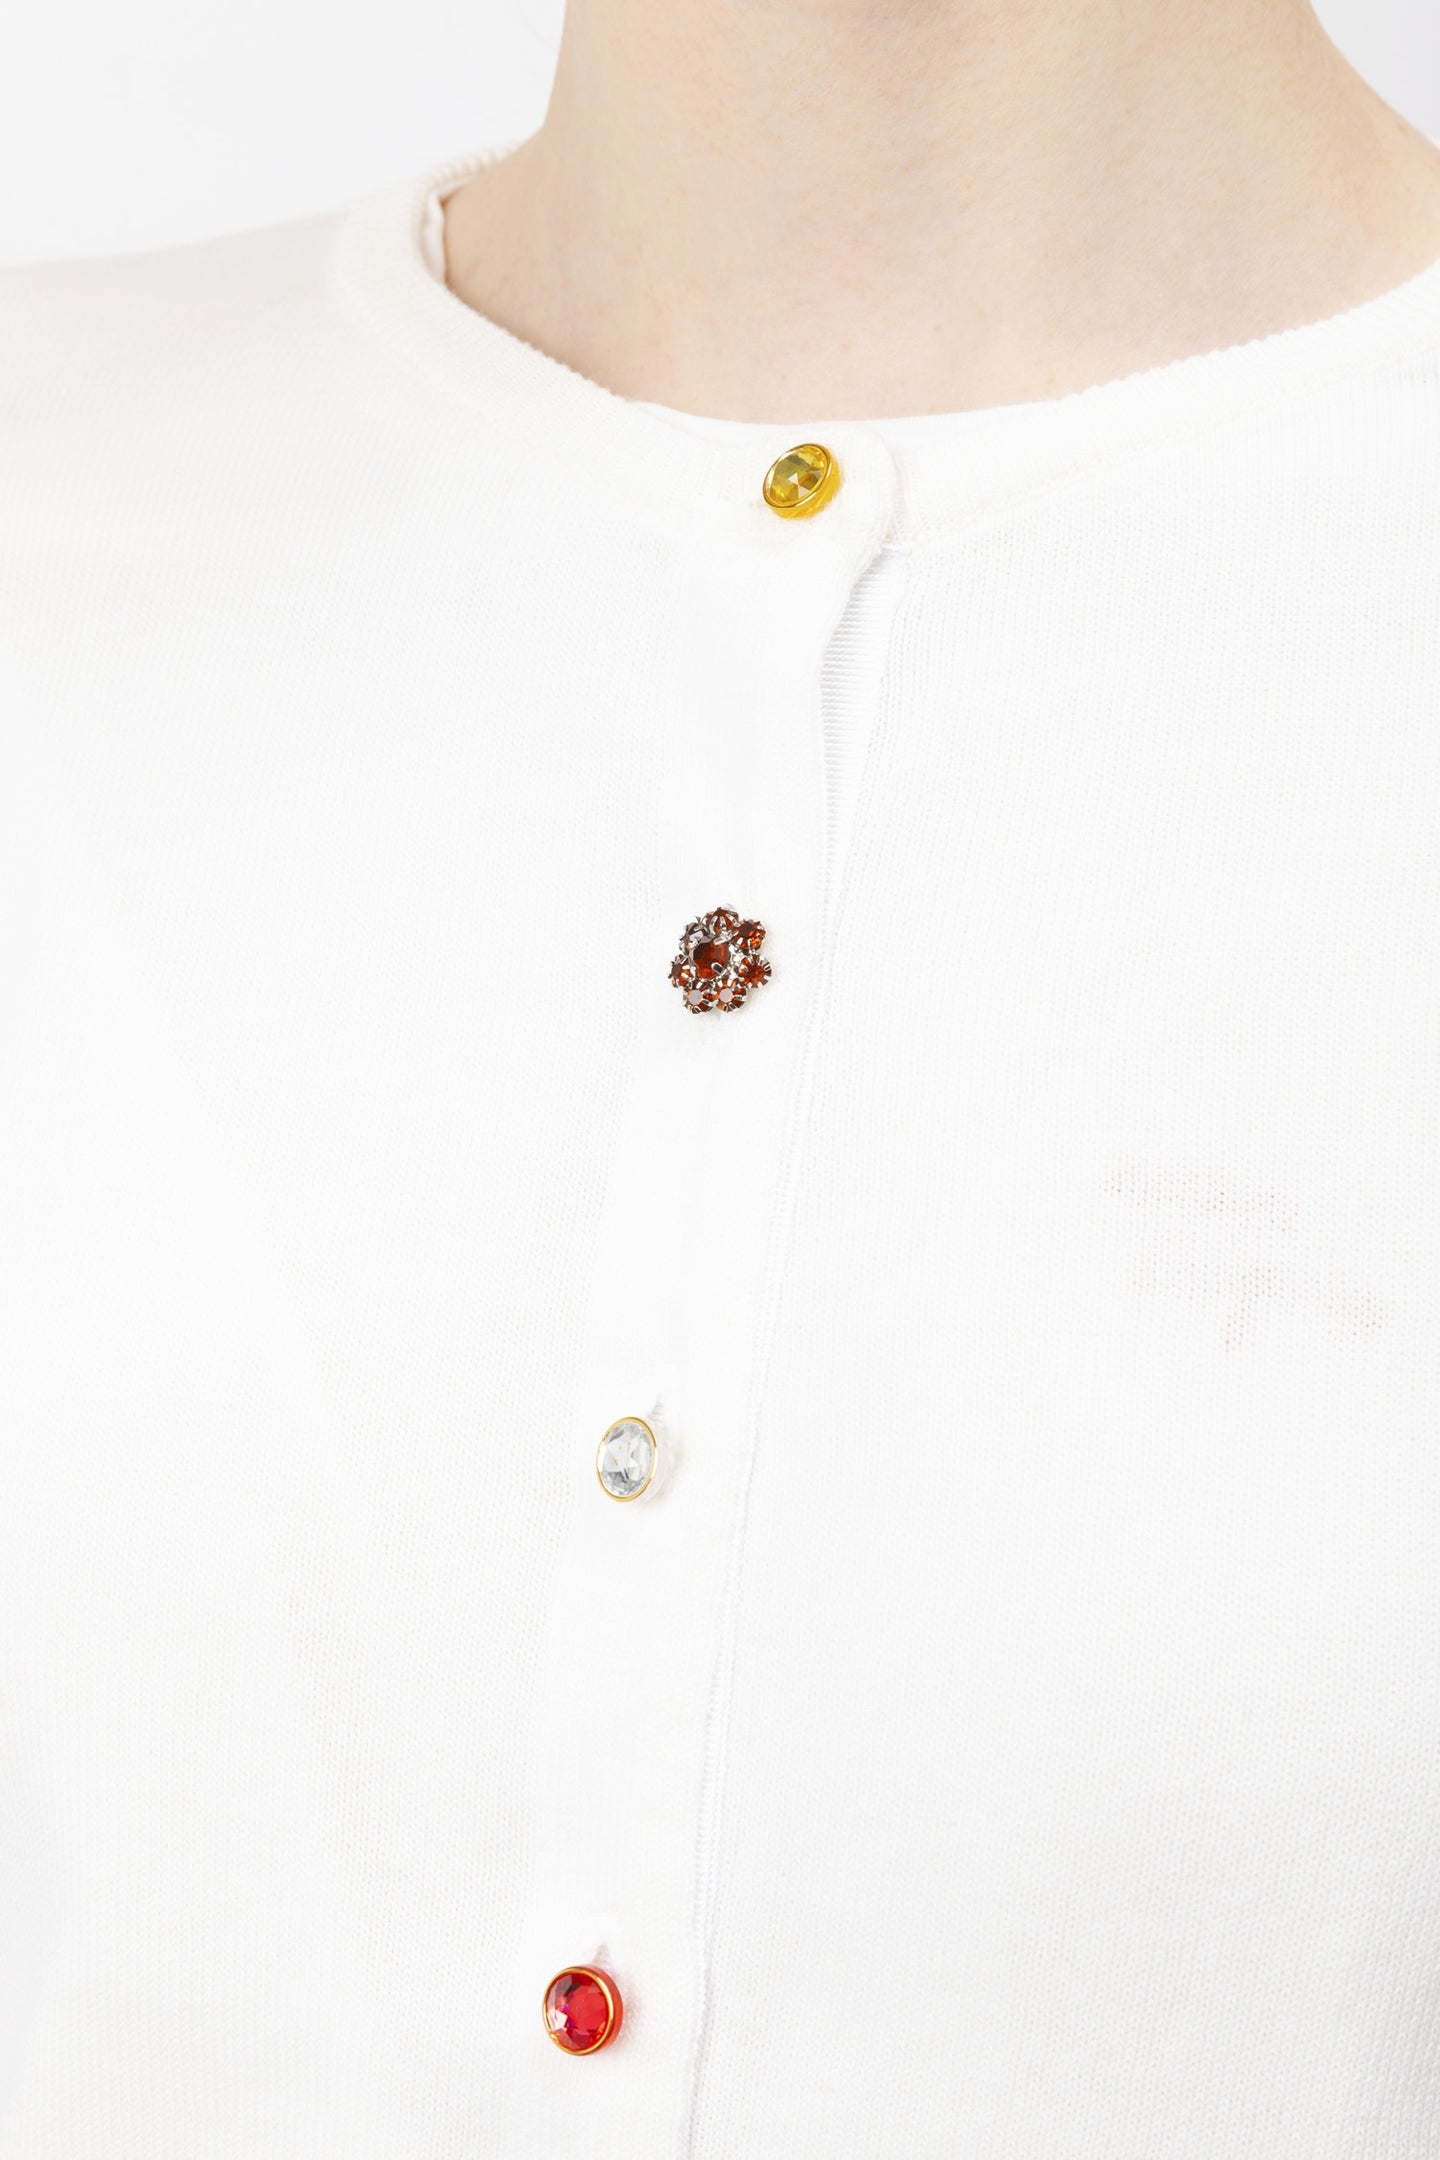 Multi-coloured Button Cotton Cardigan